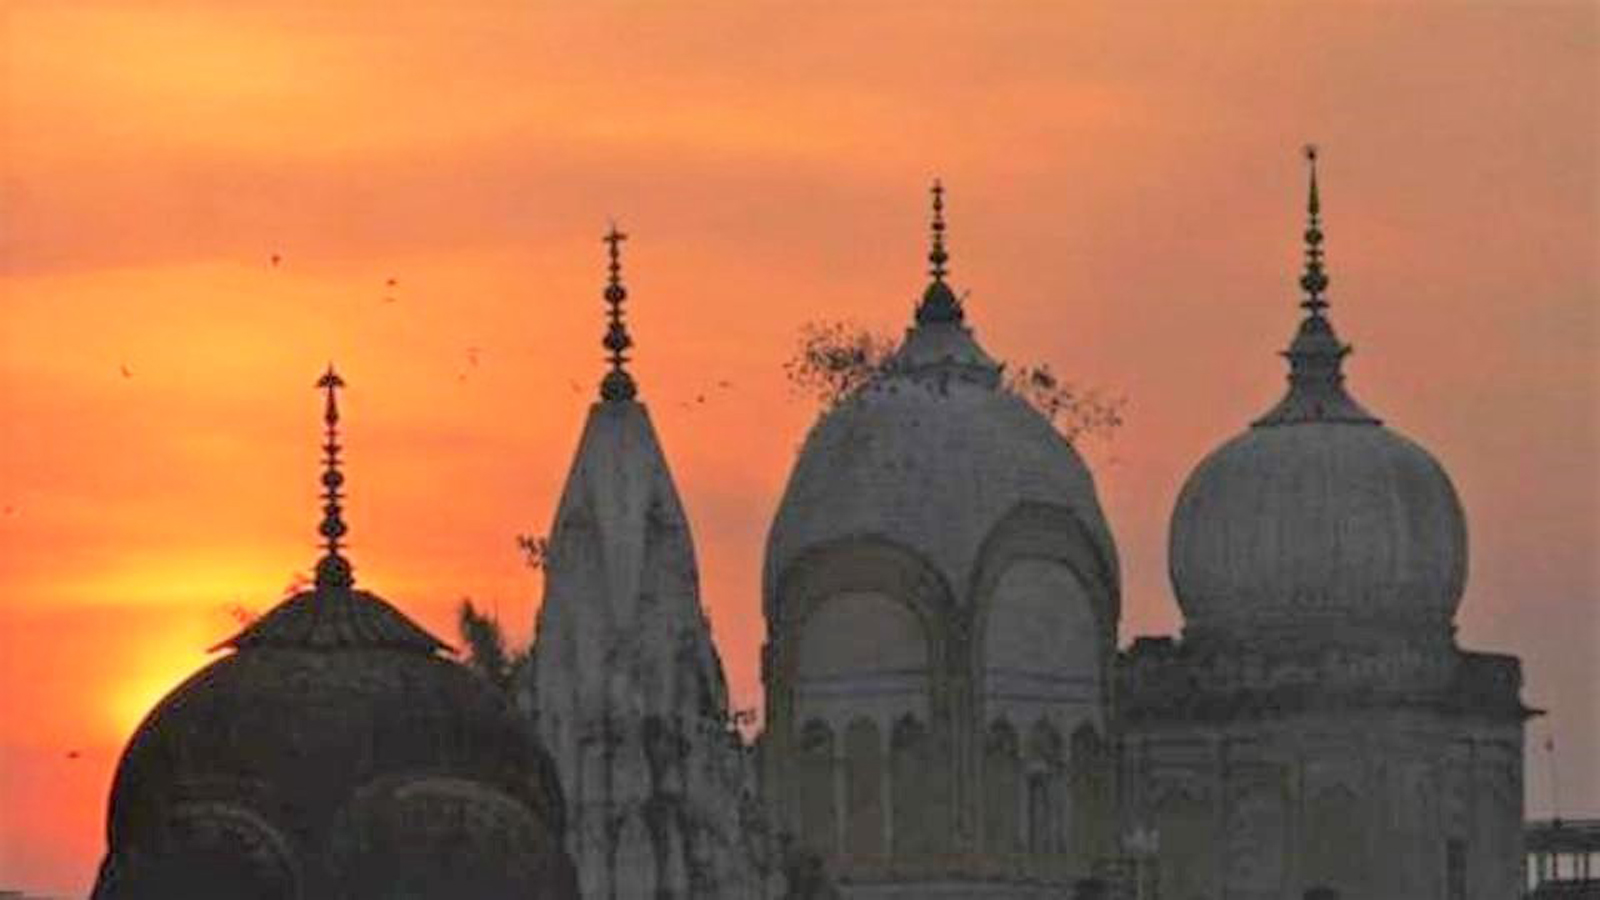  बंगाल में ध्वस्त मंदिर को फिर से बनाने के लिए मुसलमानों ने धन जुटाकर कराया निर्माण, मौलवी ने किया मंदिर का उद्घाटन।